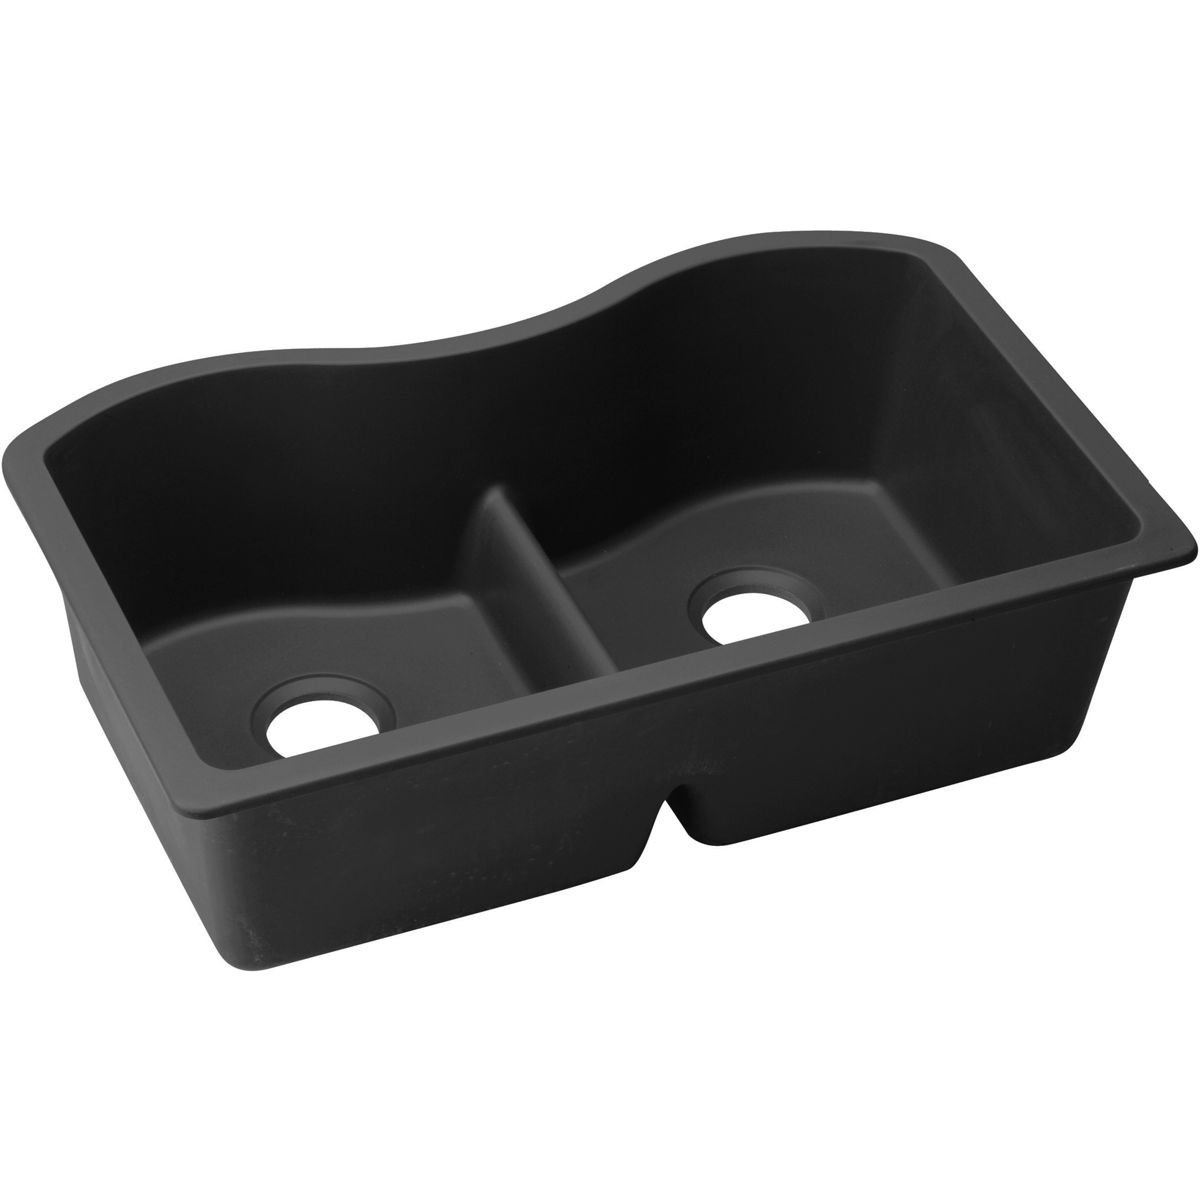 Elkay ELGULB3322BK0 Harmony Quartz Classic Undermount Sink, Black, Double-Bowl